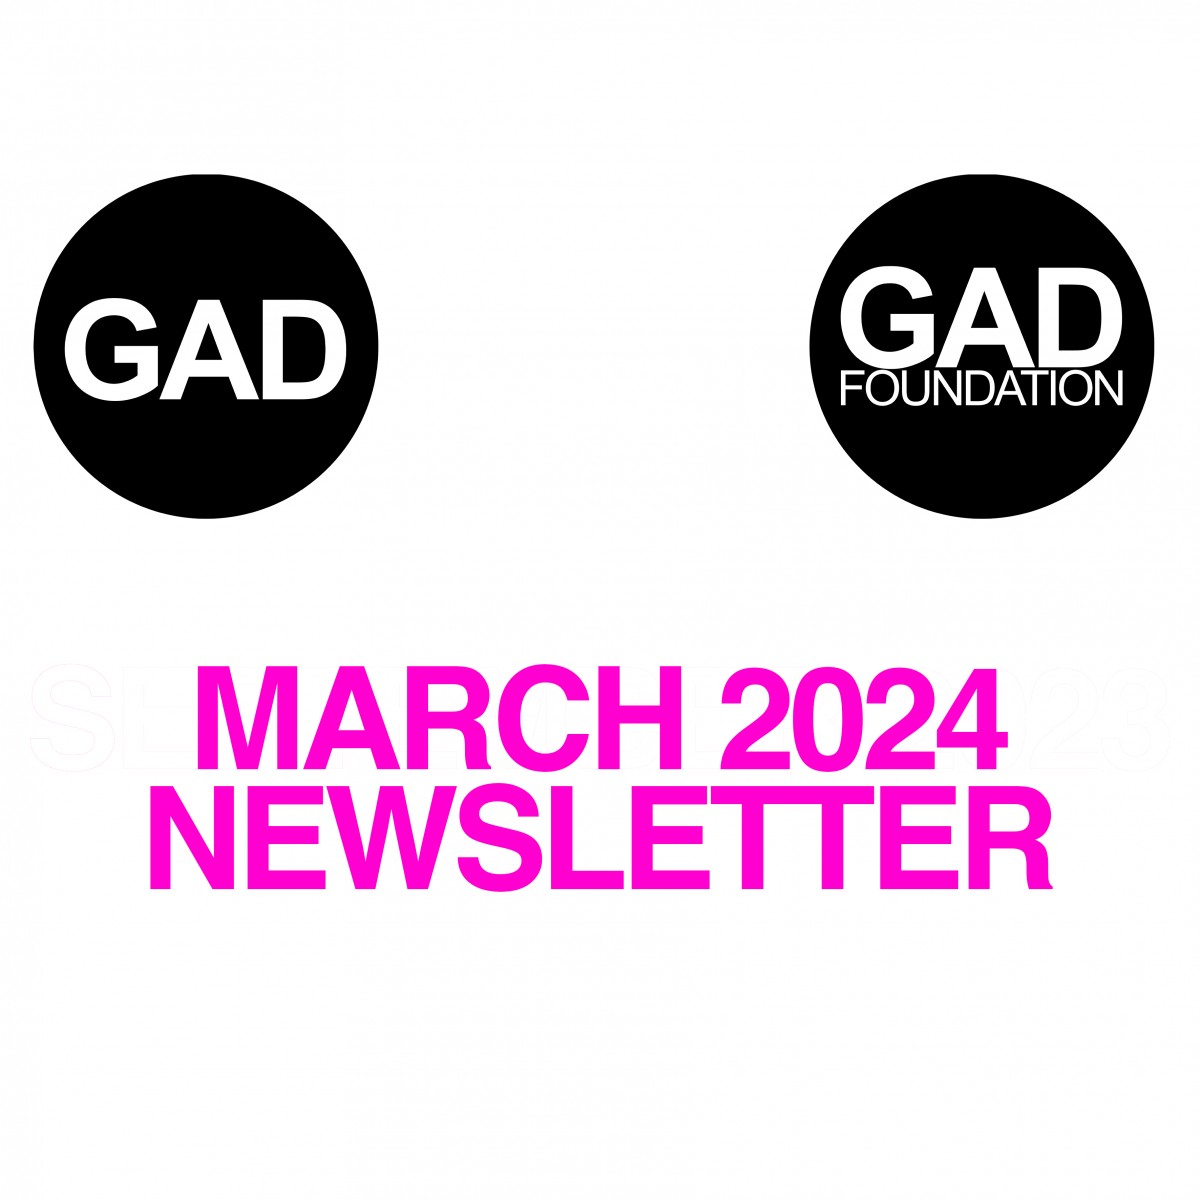 Mart 2024 Newsletter